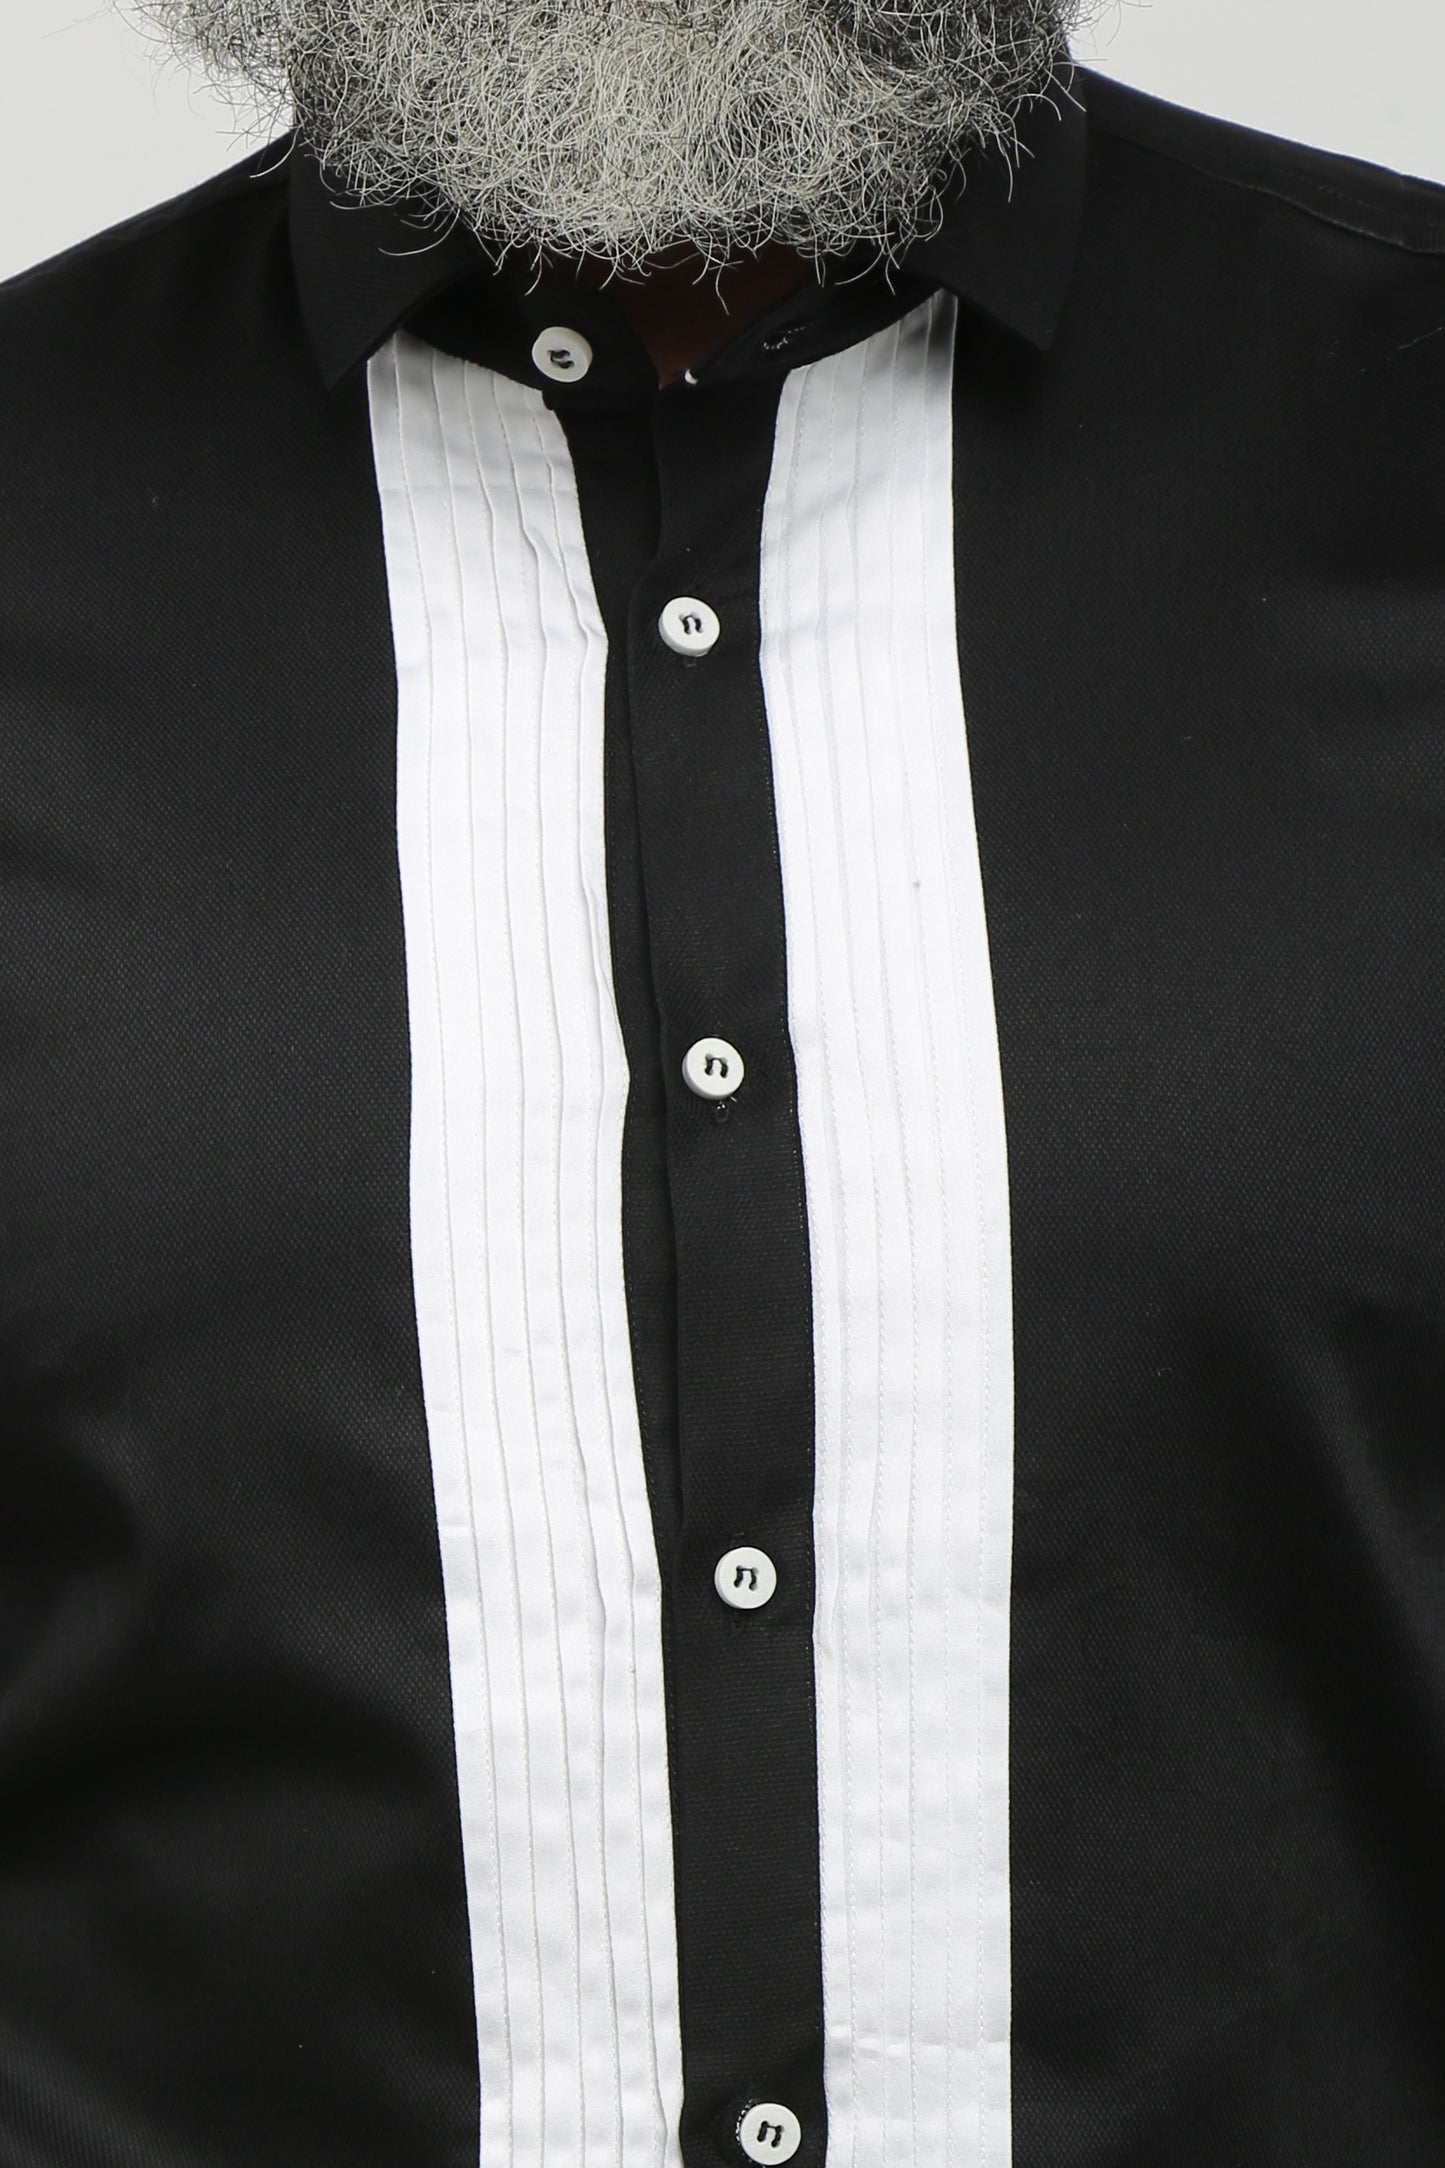 Black Tuxedo Formal Shirt